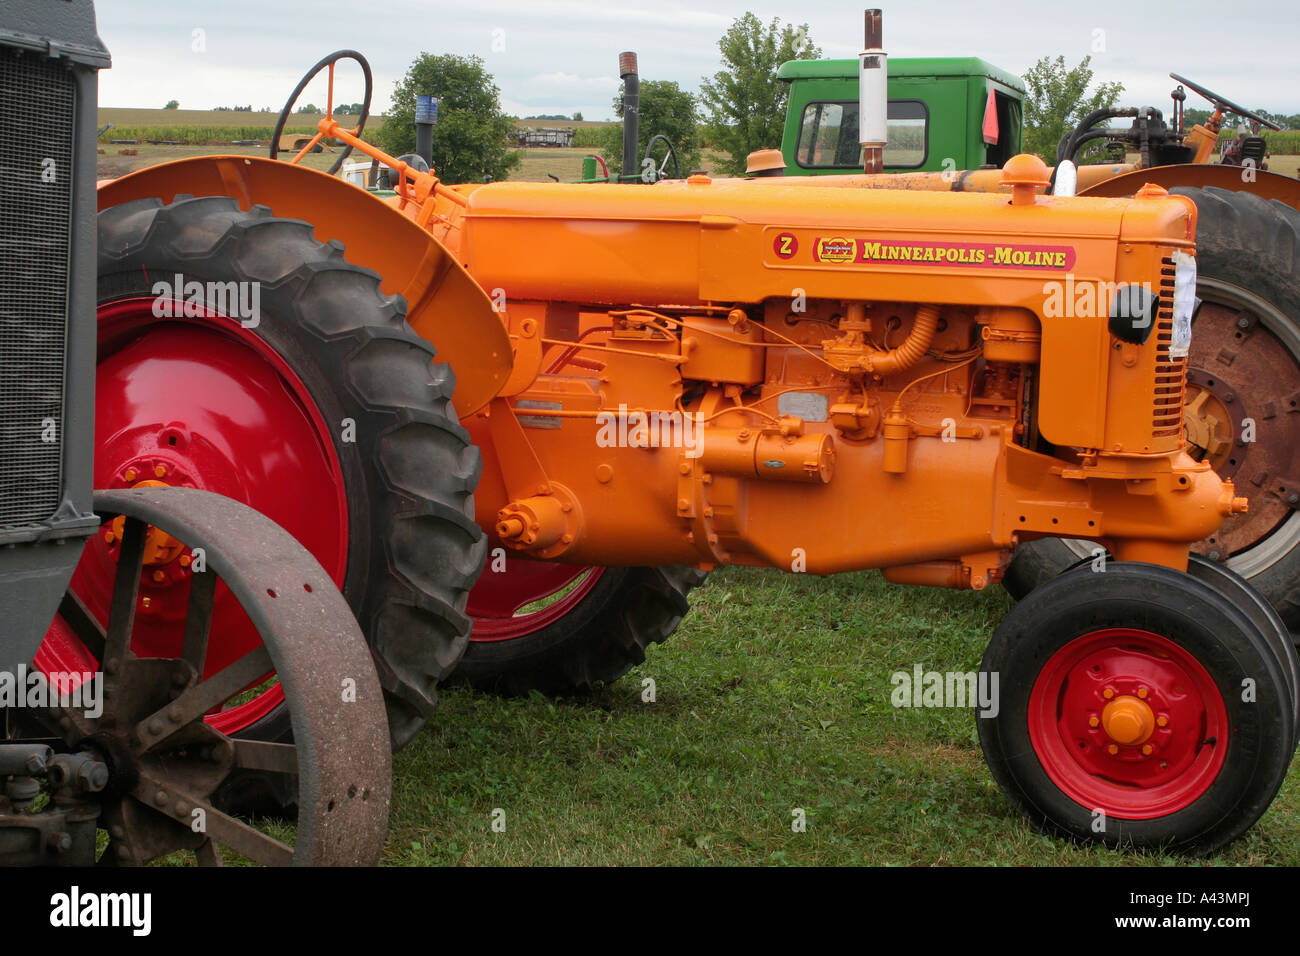 Minneapolis-Moline Z trattore agricolo Foto Stock